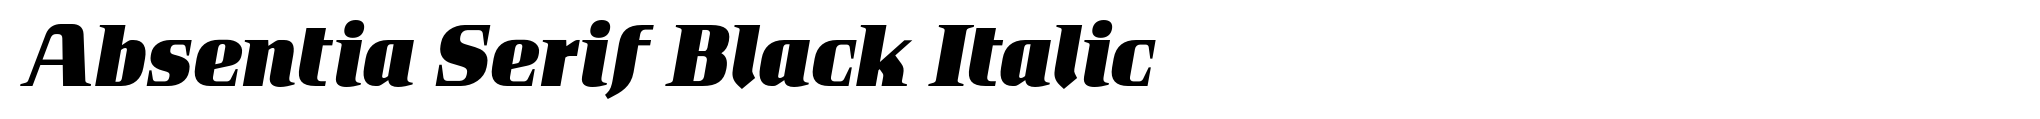 Absentia Serif Black Italic image